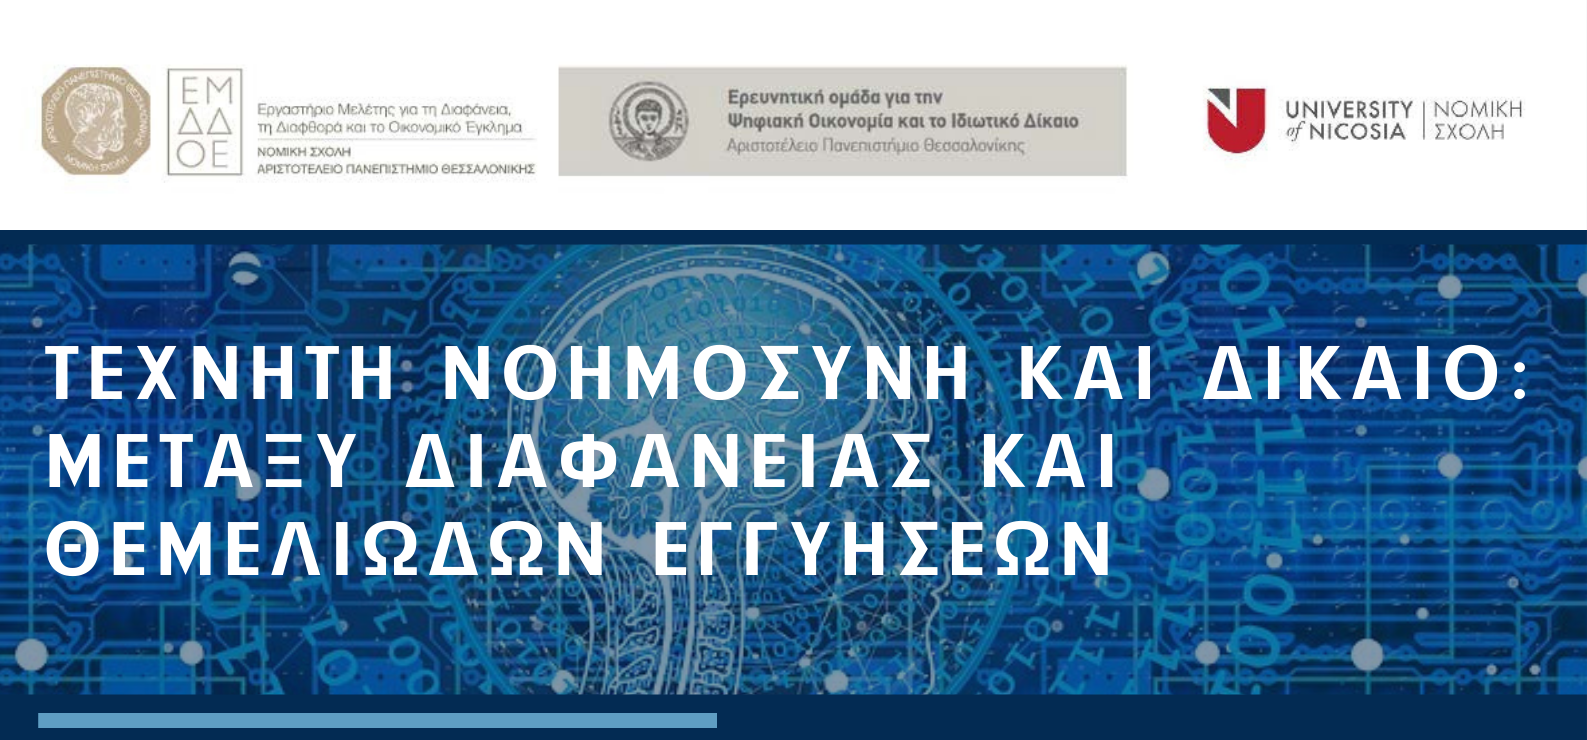 Διαδικτυακή επιστημονική εκδήλωση: “Τεχνητή νοημοσύνη και δίκαιο: μεταξύ διαφάνειας και θεμελιωδών εγγυήσεων”, 24.11.2021